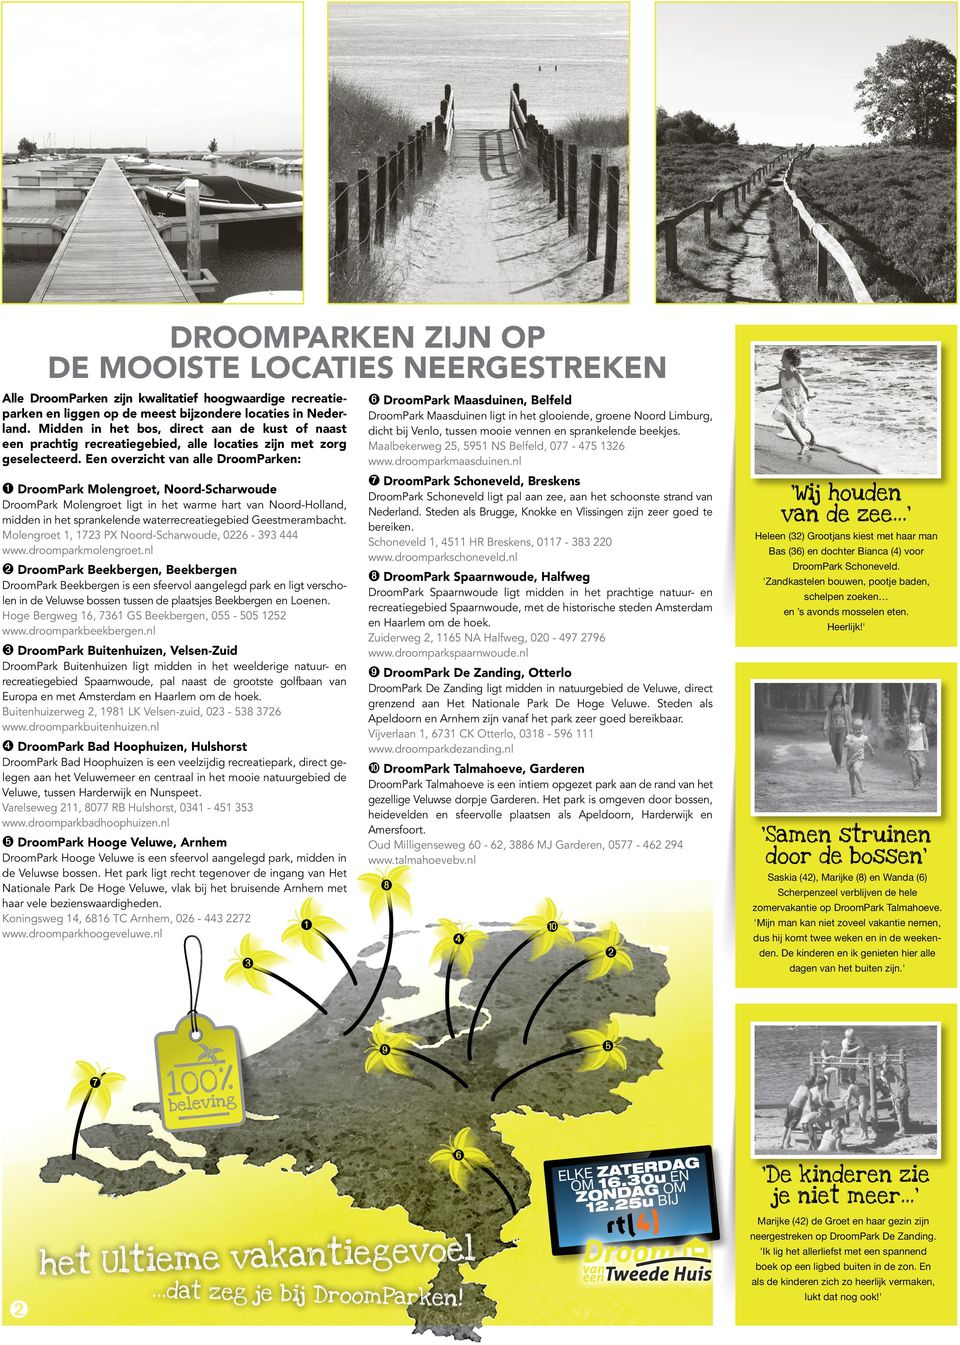 Een overzicht van alle DroomParken: ➊ DroomPark Molengroet, Noord-Scharwoude DroomPark Molengroet ligt in het warme hart van Noord-Holland, midden in het sprankelende waterrecreatiegebied